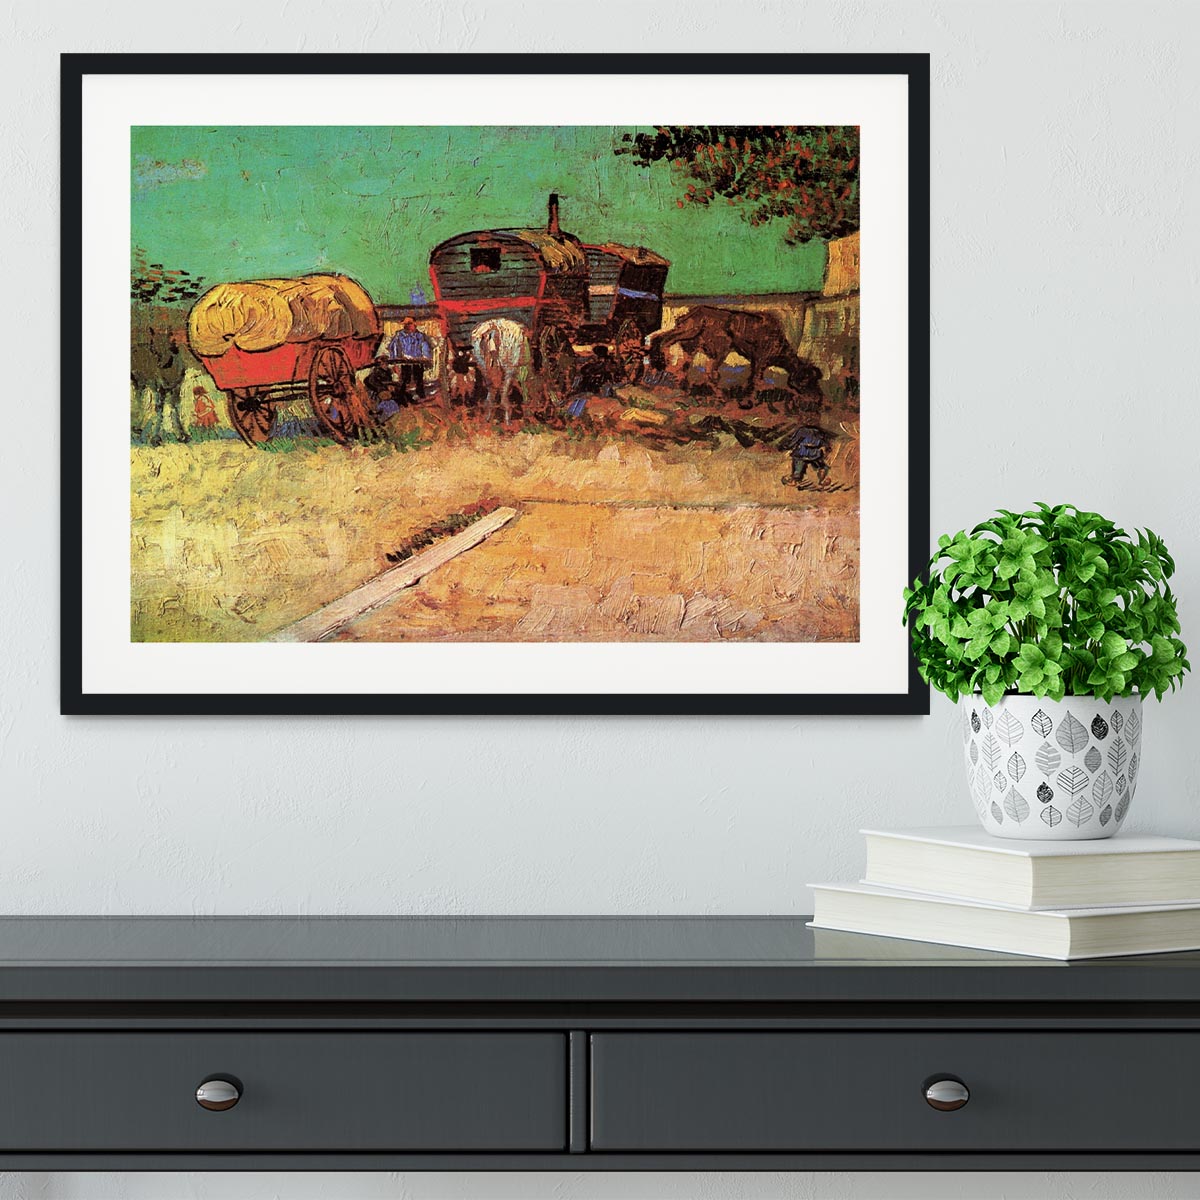 Encampment of Gypsies with Caravans by Van Gogh Framed Print - Canvas Art Rocks - 1